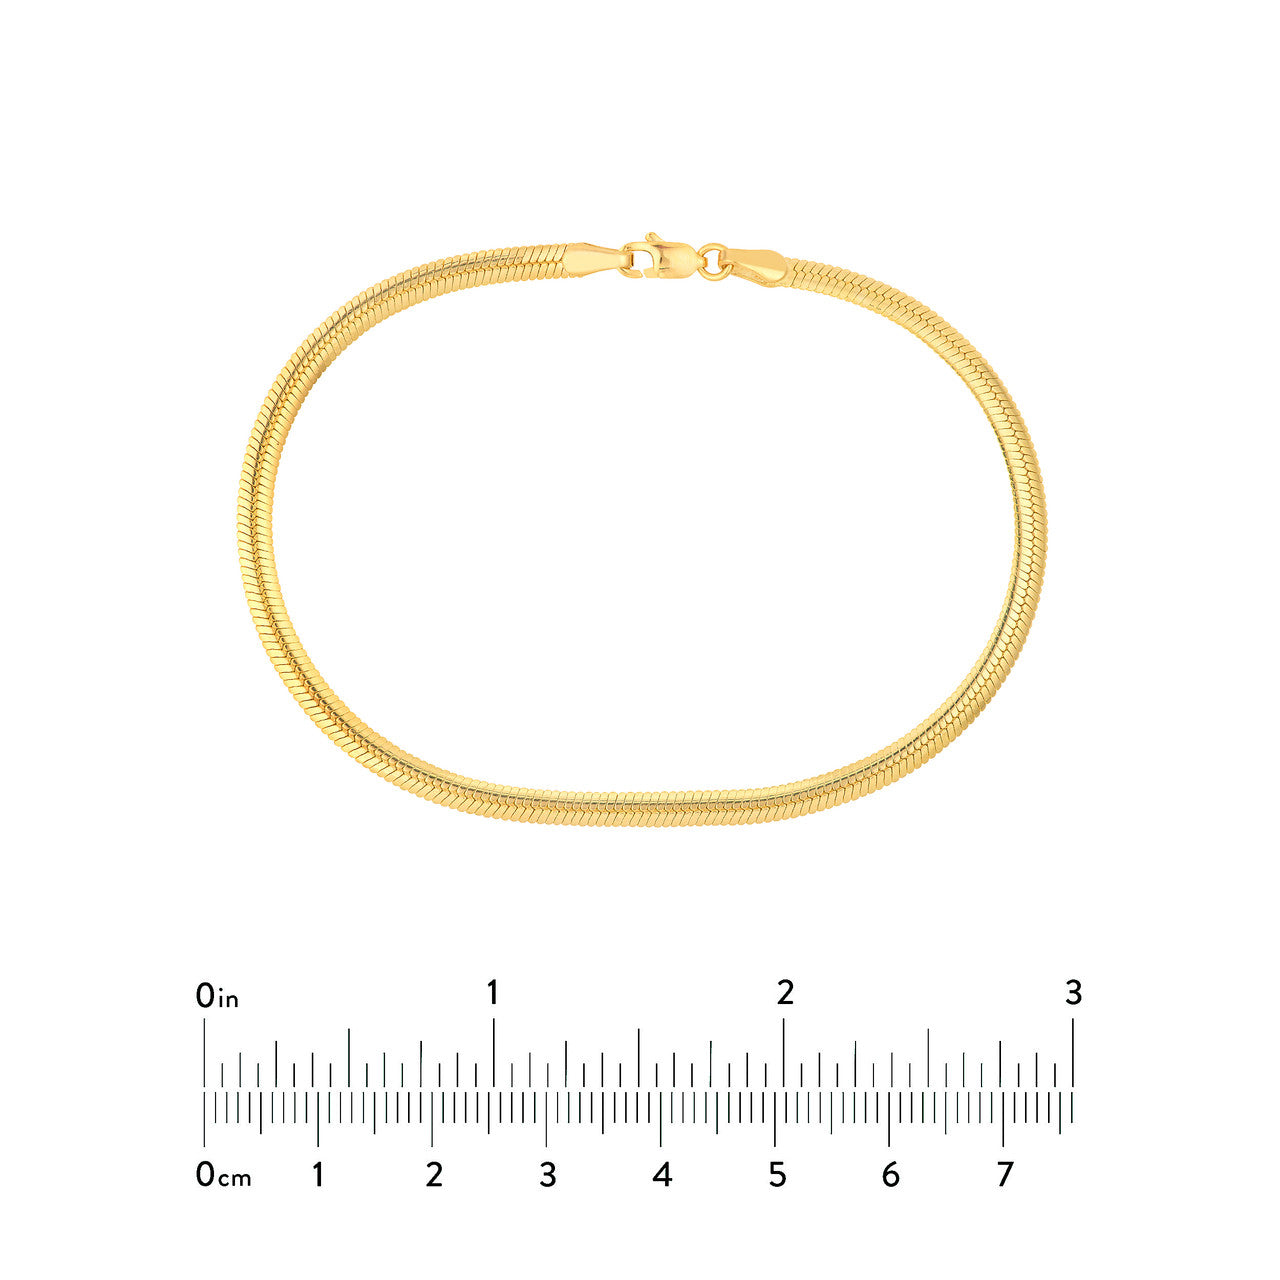 14k Gold Snake Chain Bracelet